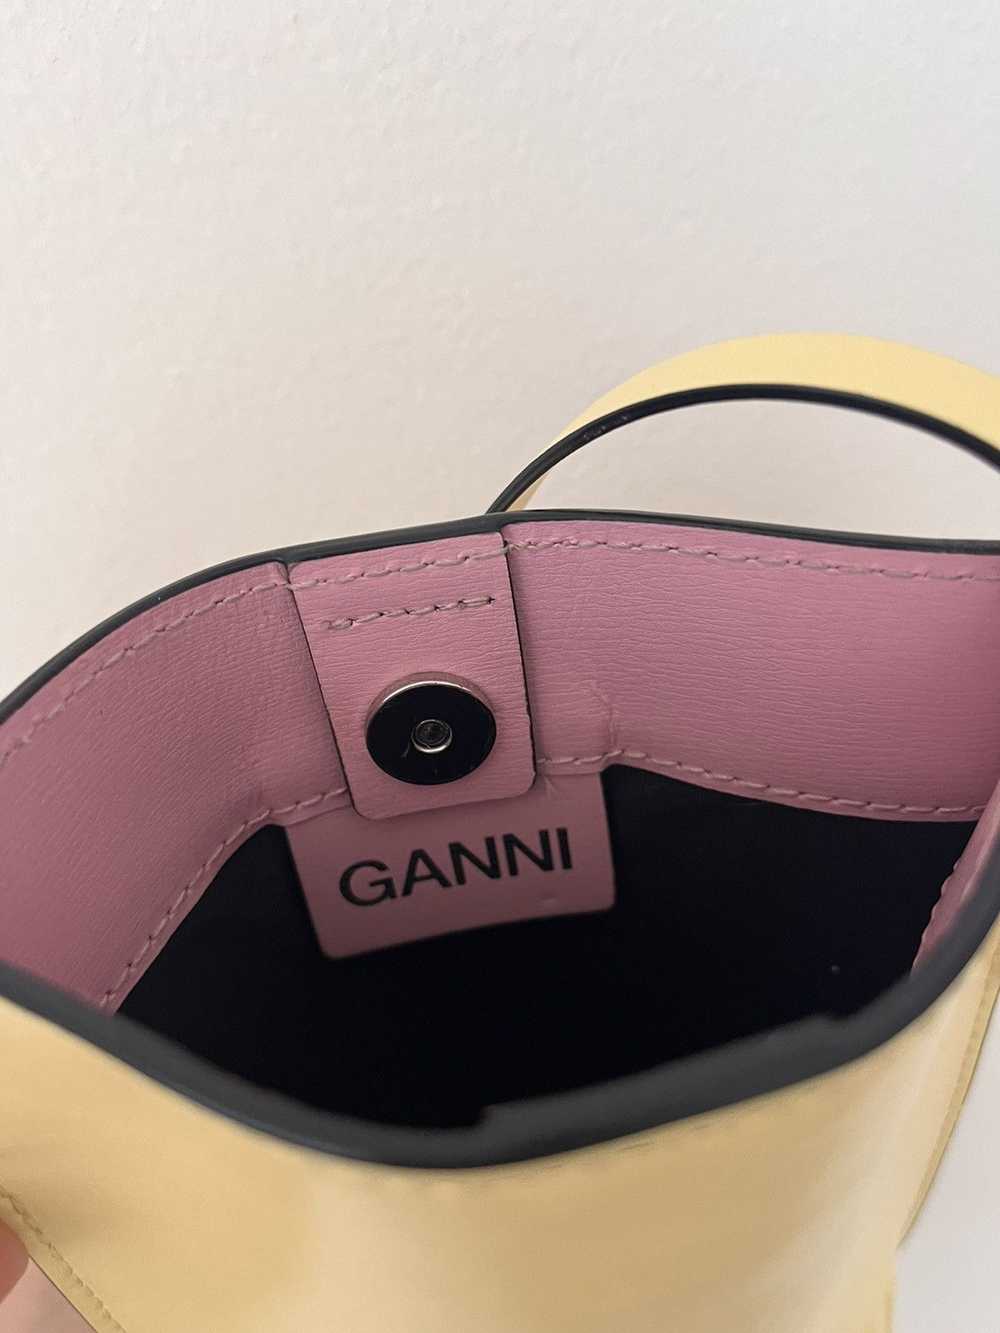 Ganni Ganni side bag - image 5